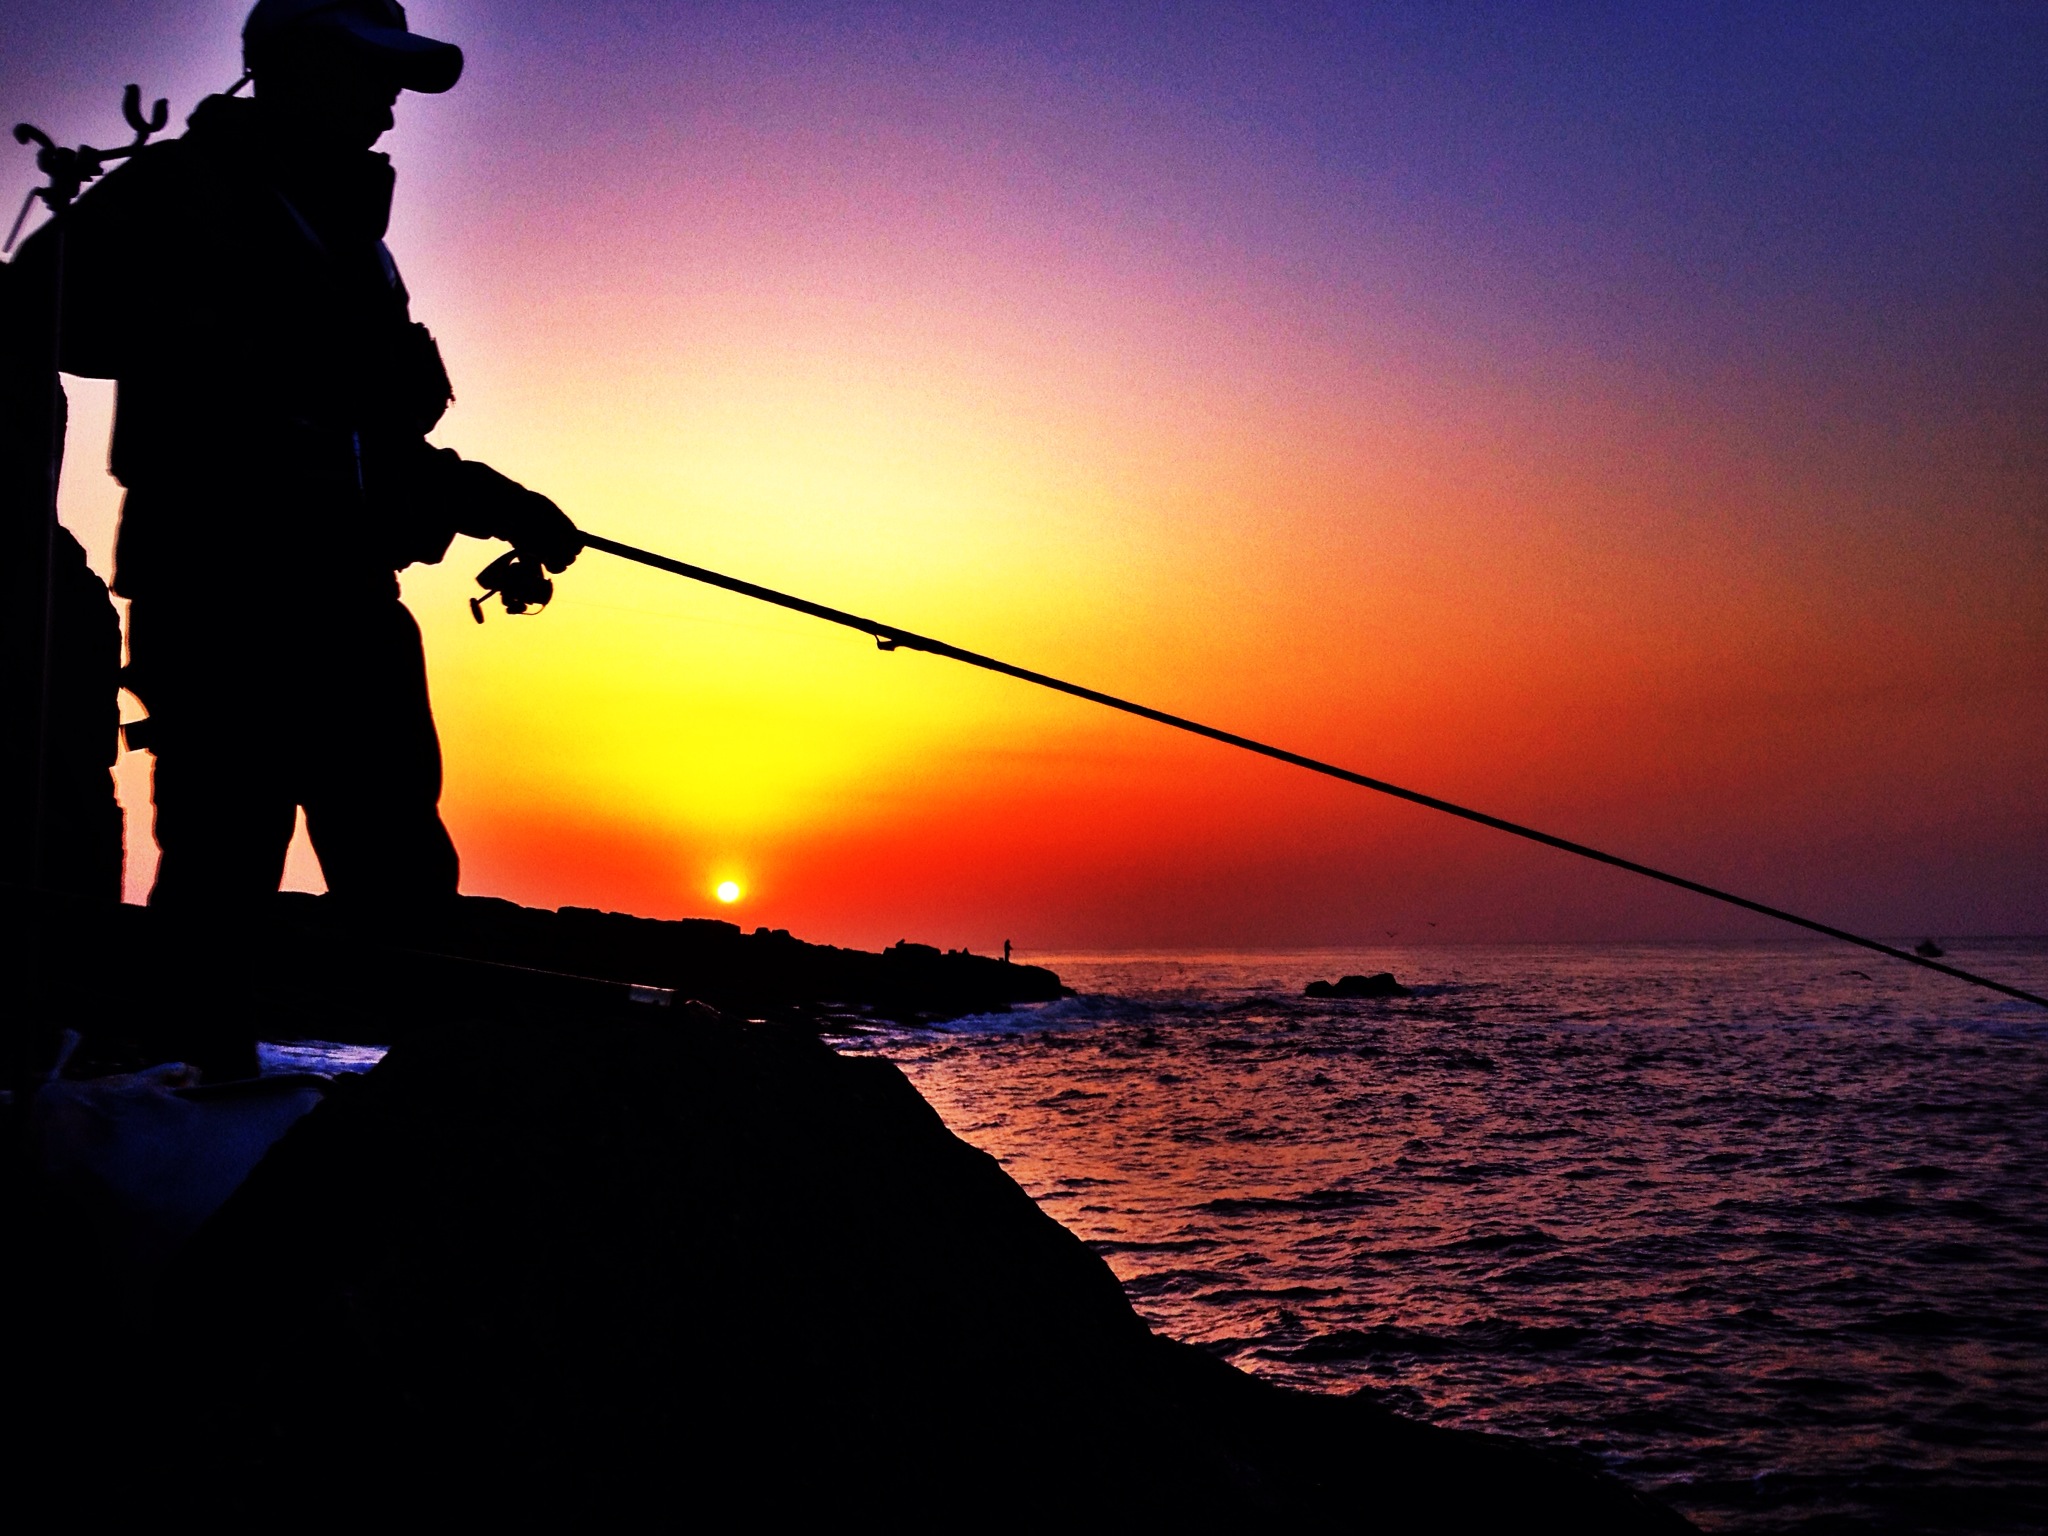 熊本で釣りをするなら おすすめの釣り場情報 釣り船や釣り堀も Travelnote トラベルノート